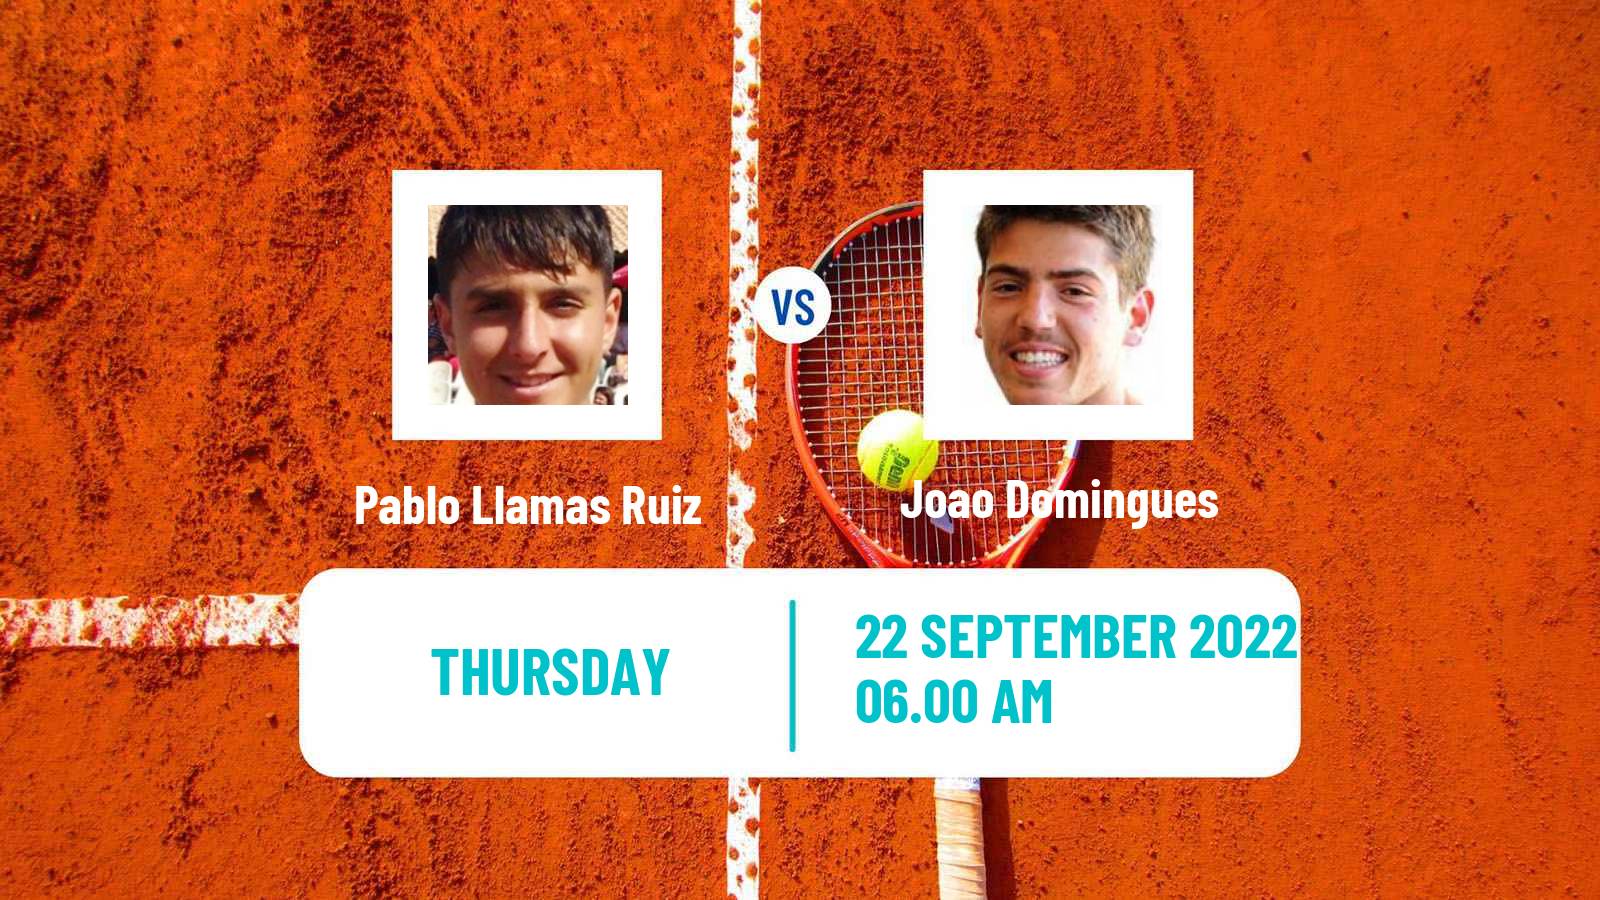 Tennis ATP Challenger Pablo Llamas Ruiz - Joao Domingues